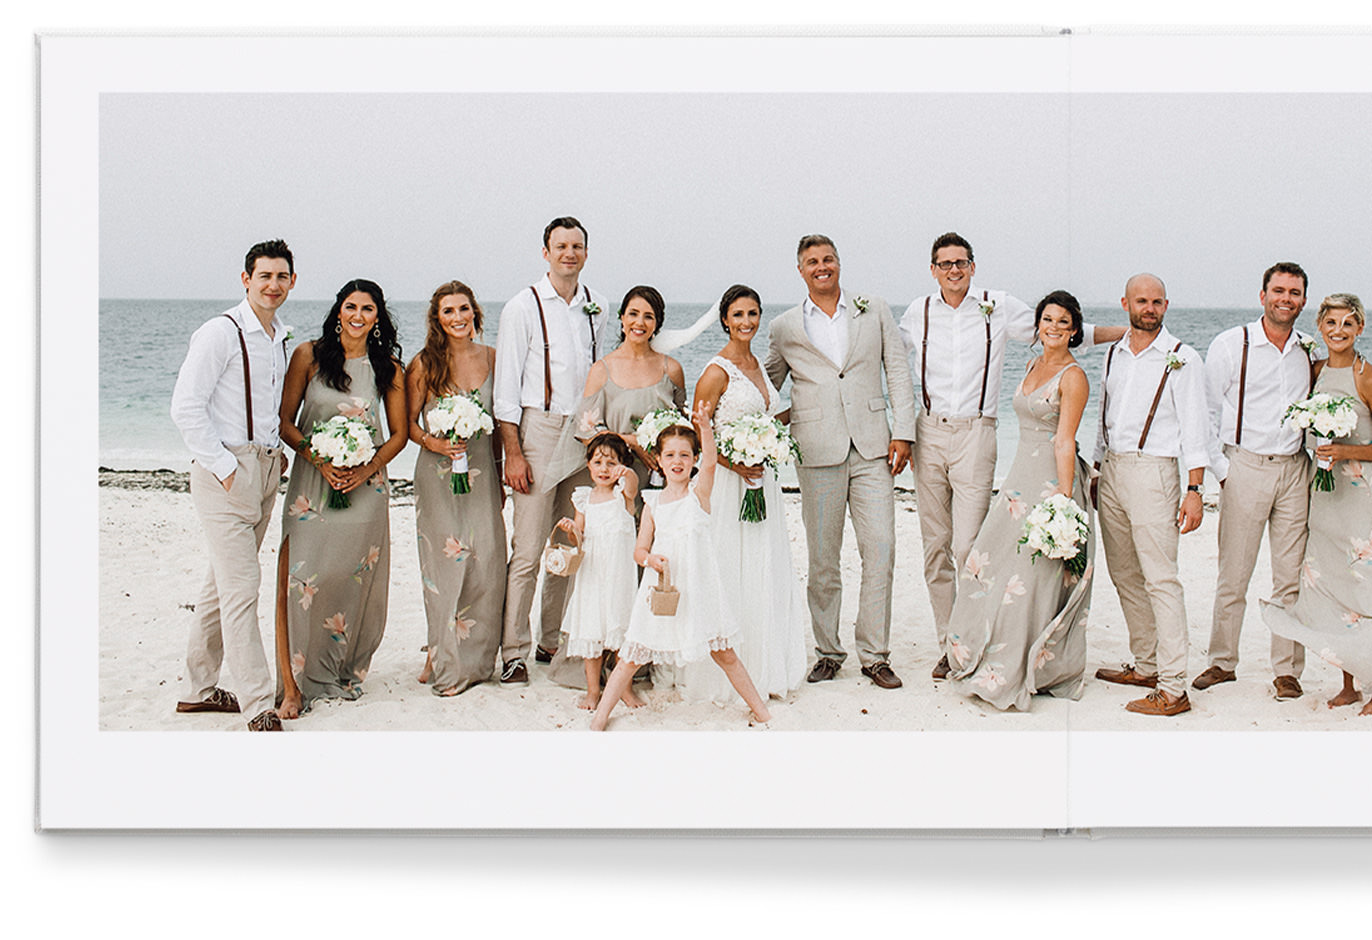 Álbum de fotos premium em formato paisagem com imagem de 6 impressões de uma noiva, noivo e convidados de casamento na praia.